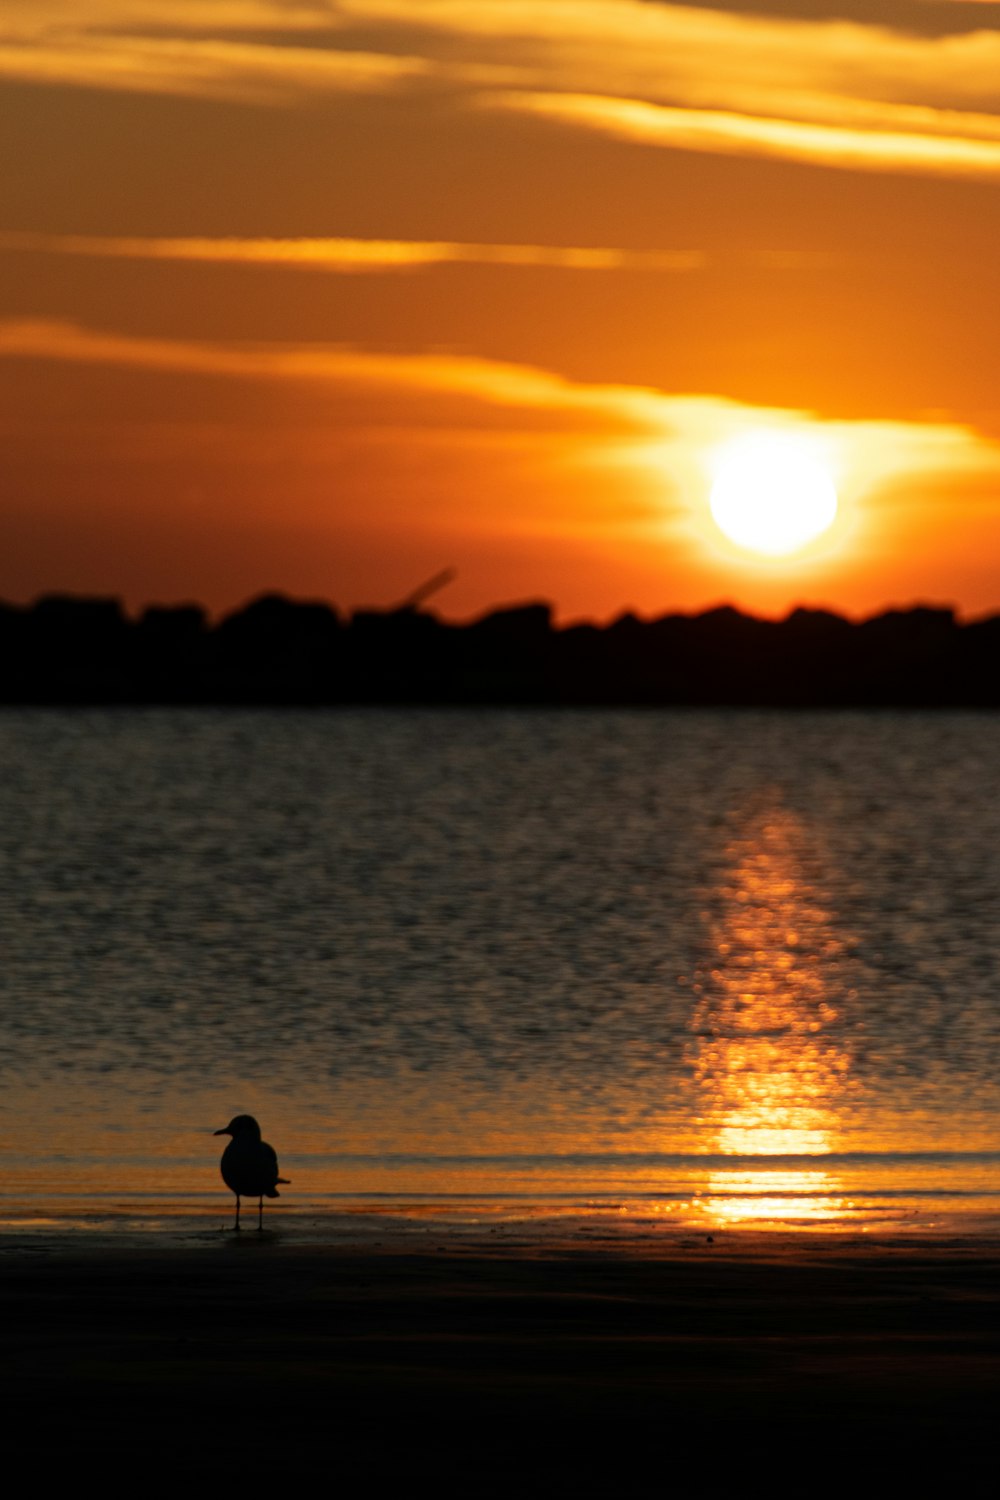 a bird standing on a beach at sunset